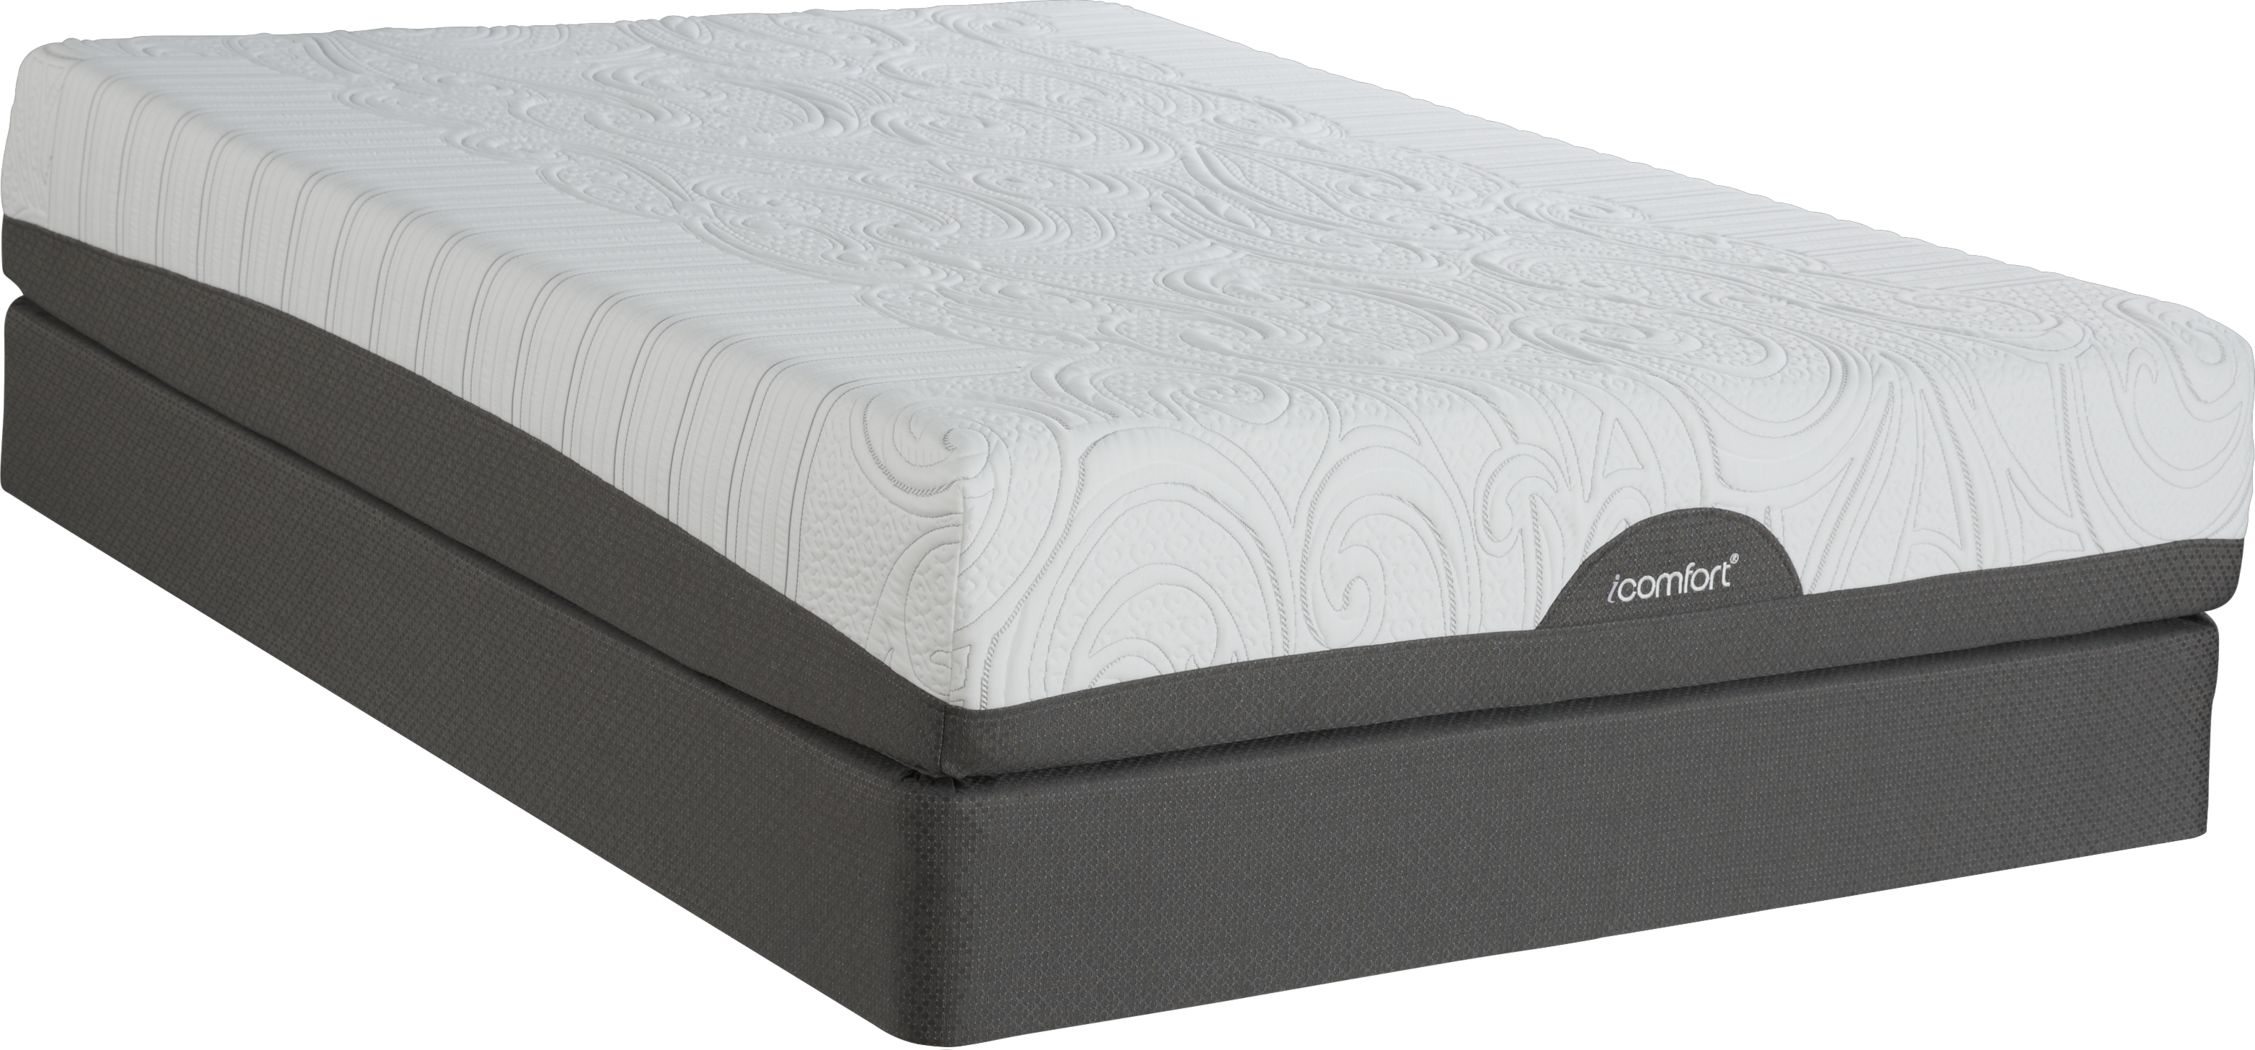 warranty for icomfort epic queen mattress